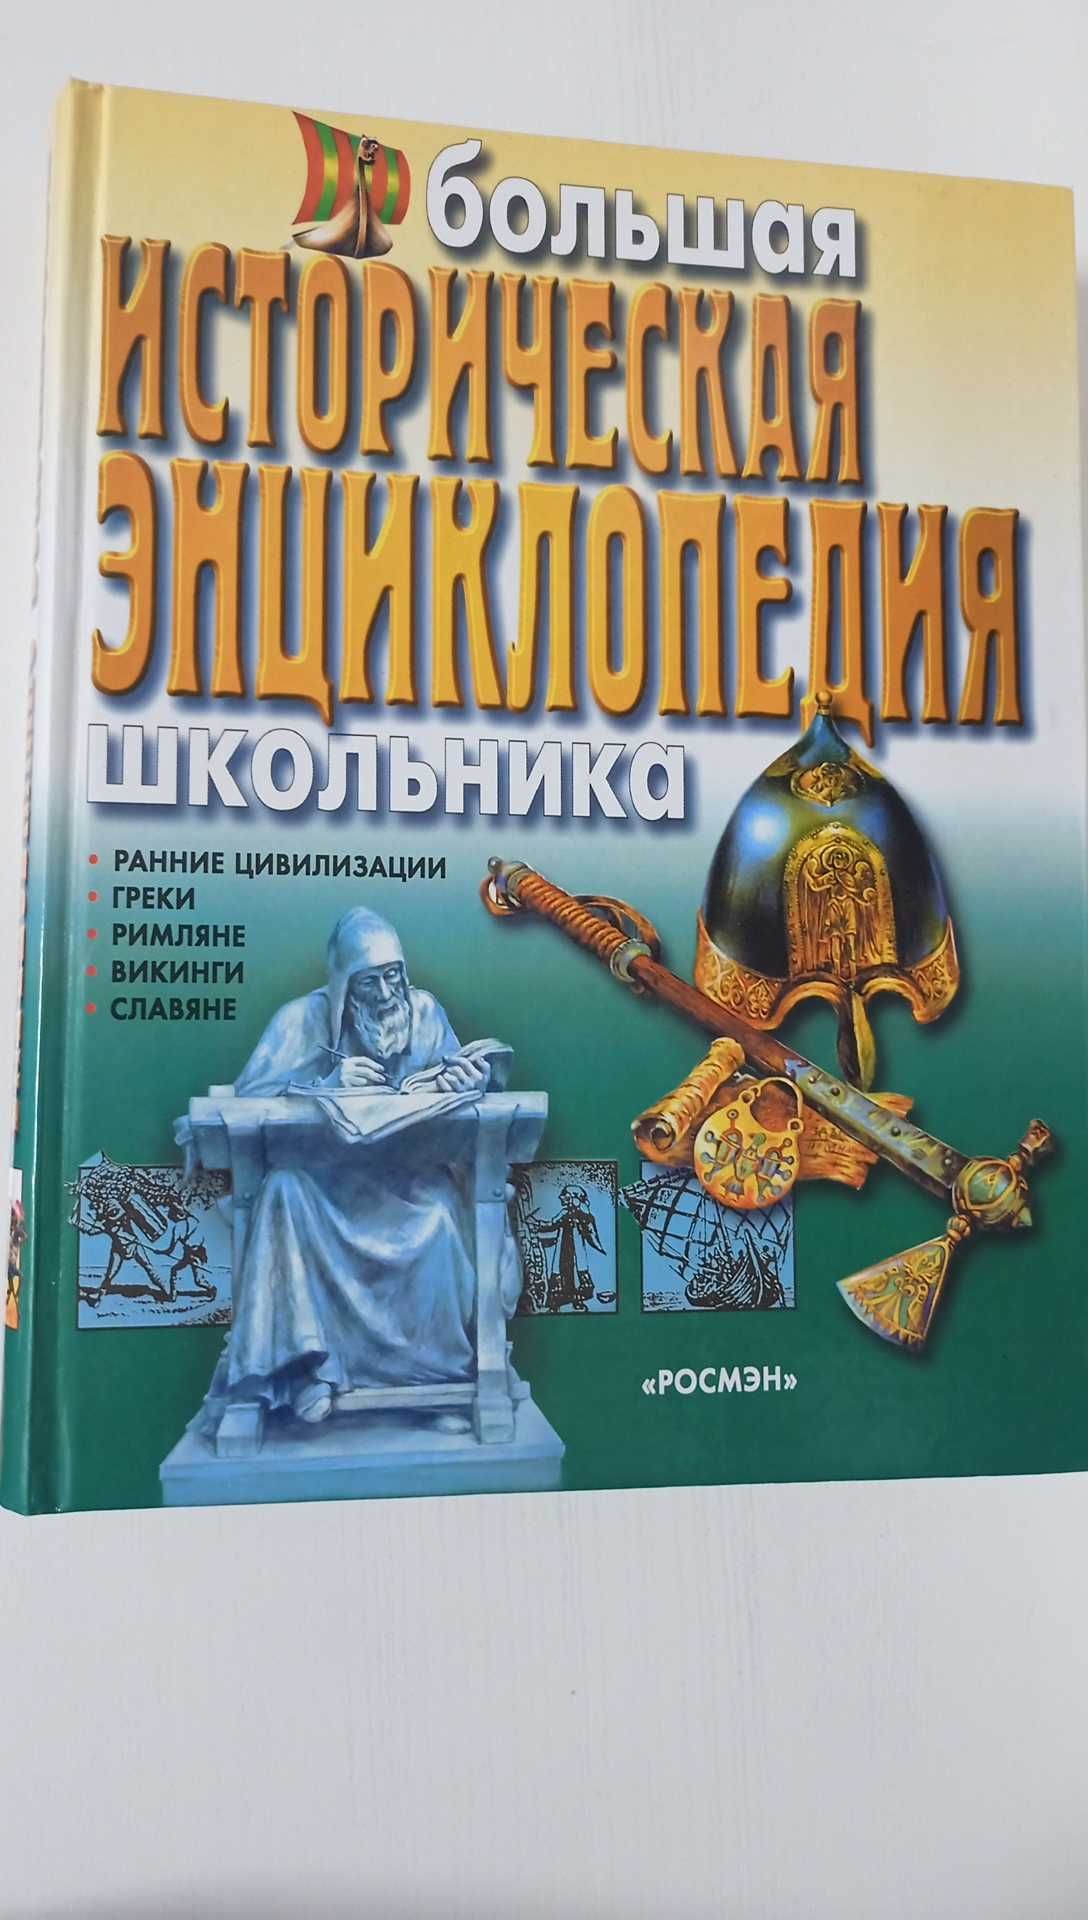 Большая историческая  энциклопедия школьника